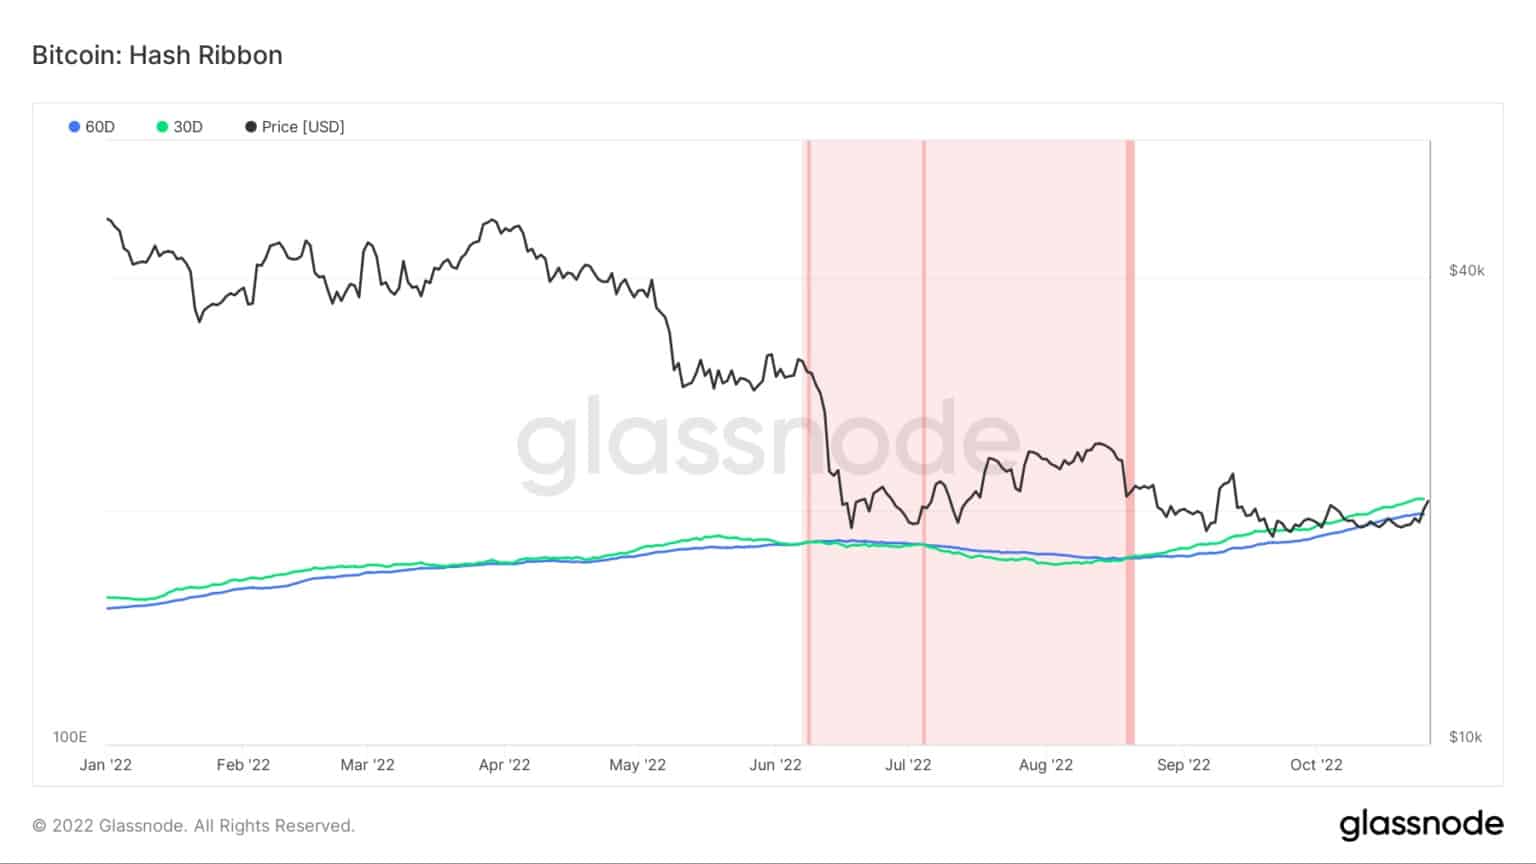 Grafico che mostra l'indicatore del nastro di hash del Bitcoin da gennaio 2022 a ottobre 2022 (Fonte: Glassnode)